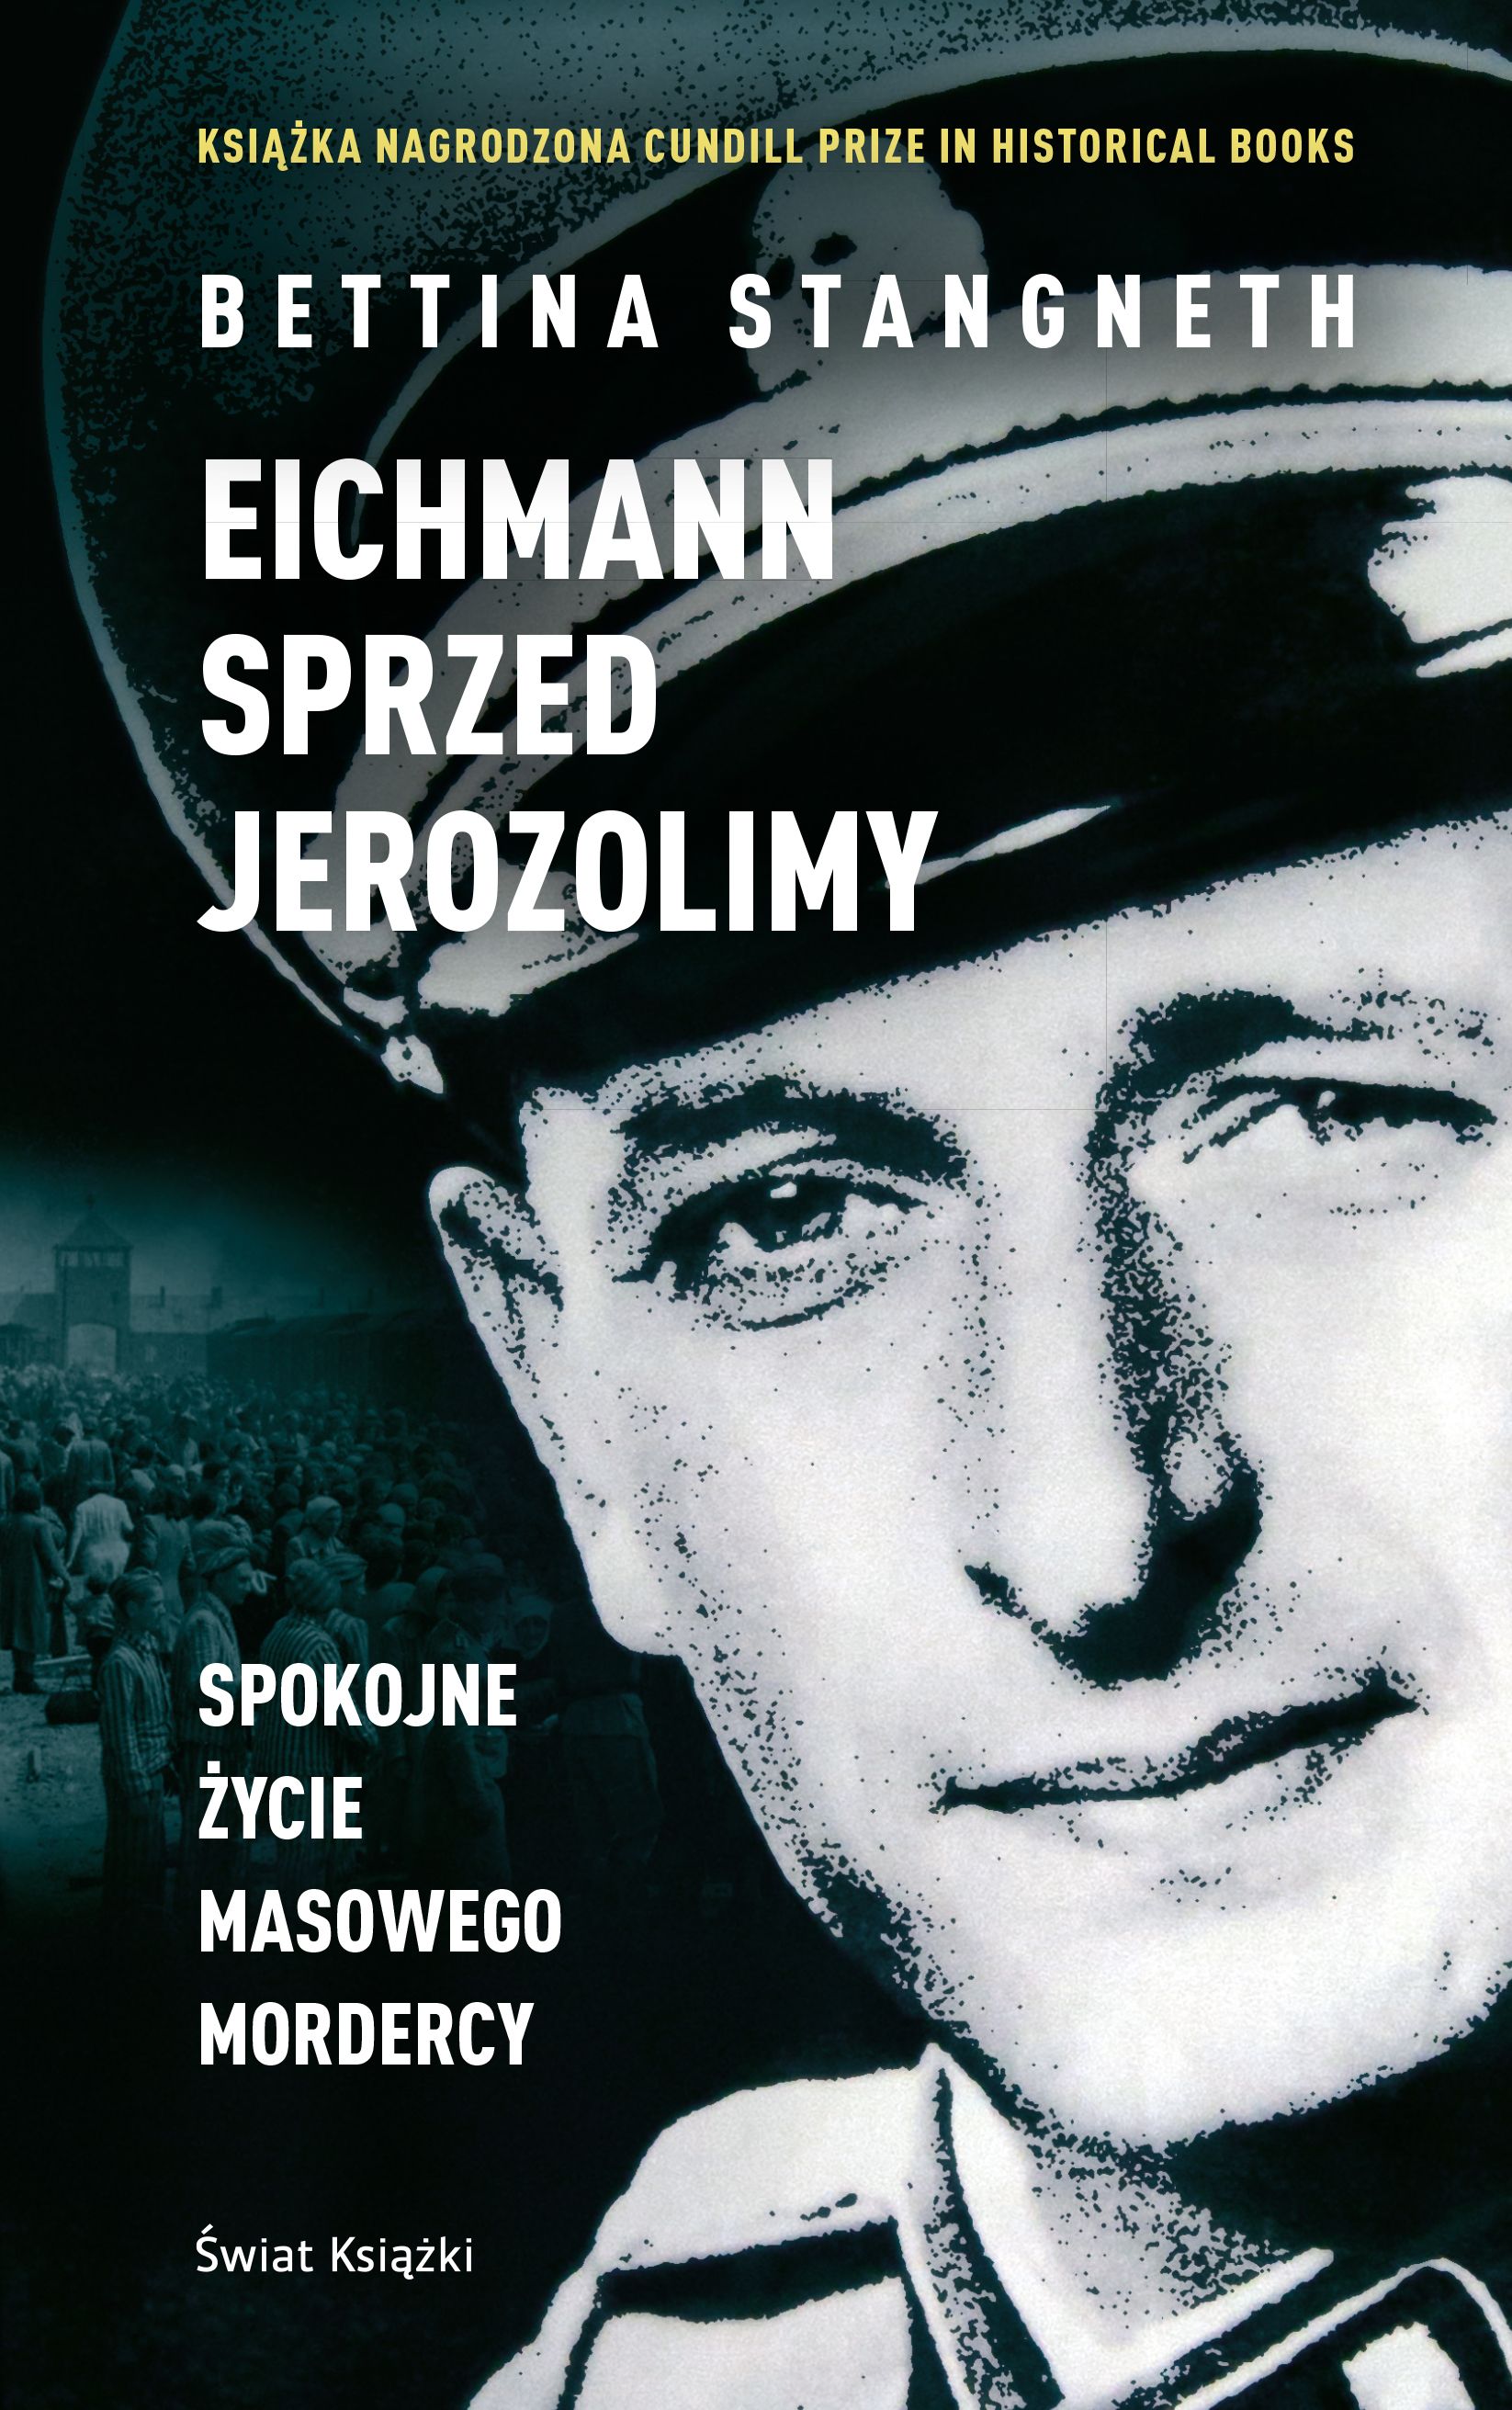 Artykuł powstał m.in. na podstawie najnowszej książki Bettiny Stangneth "Eichmann sprzed Jerozolimy" (Świat Książki 2017), która skreśliła w niej wizerunek jednego z największych nazistowskich zbrodniarzy.